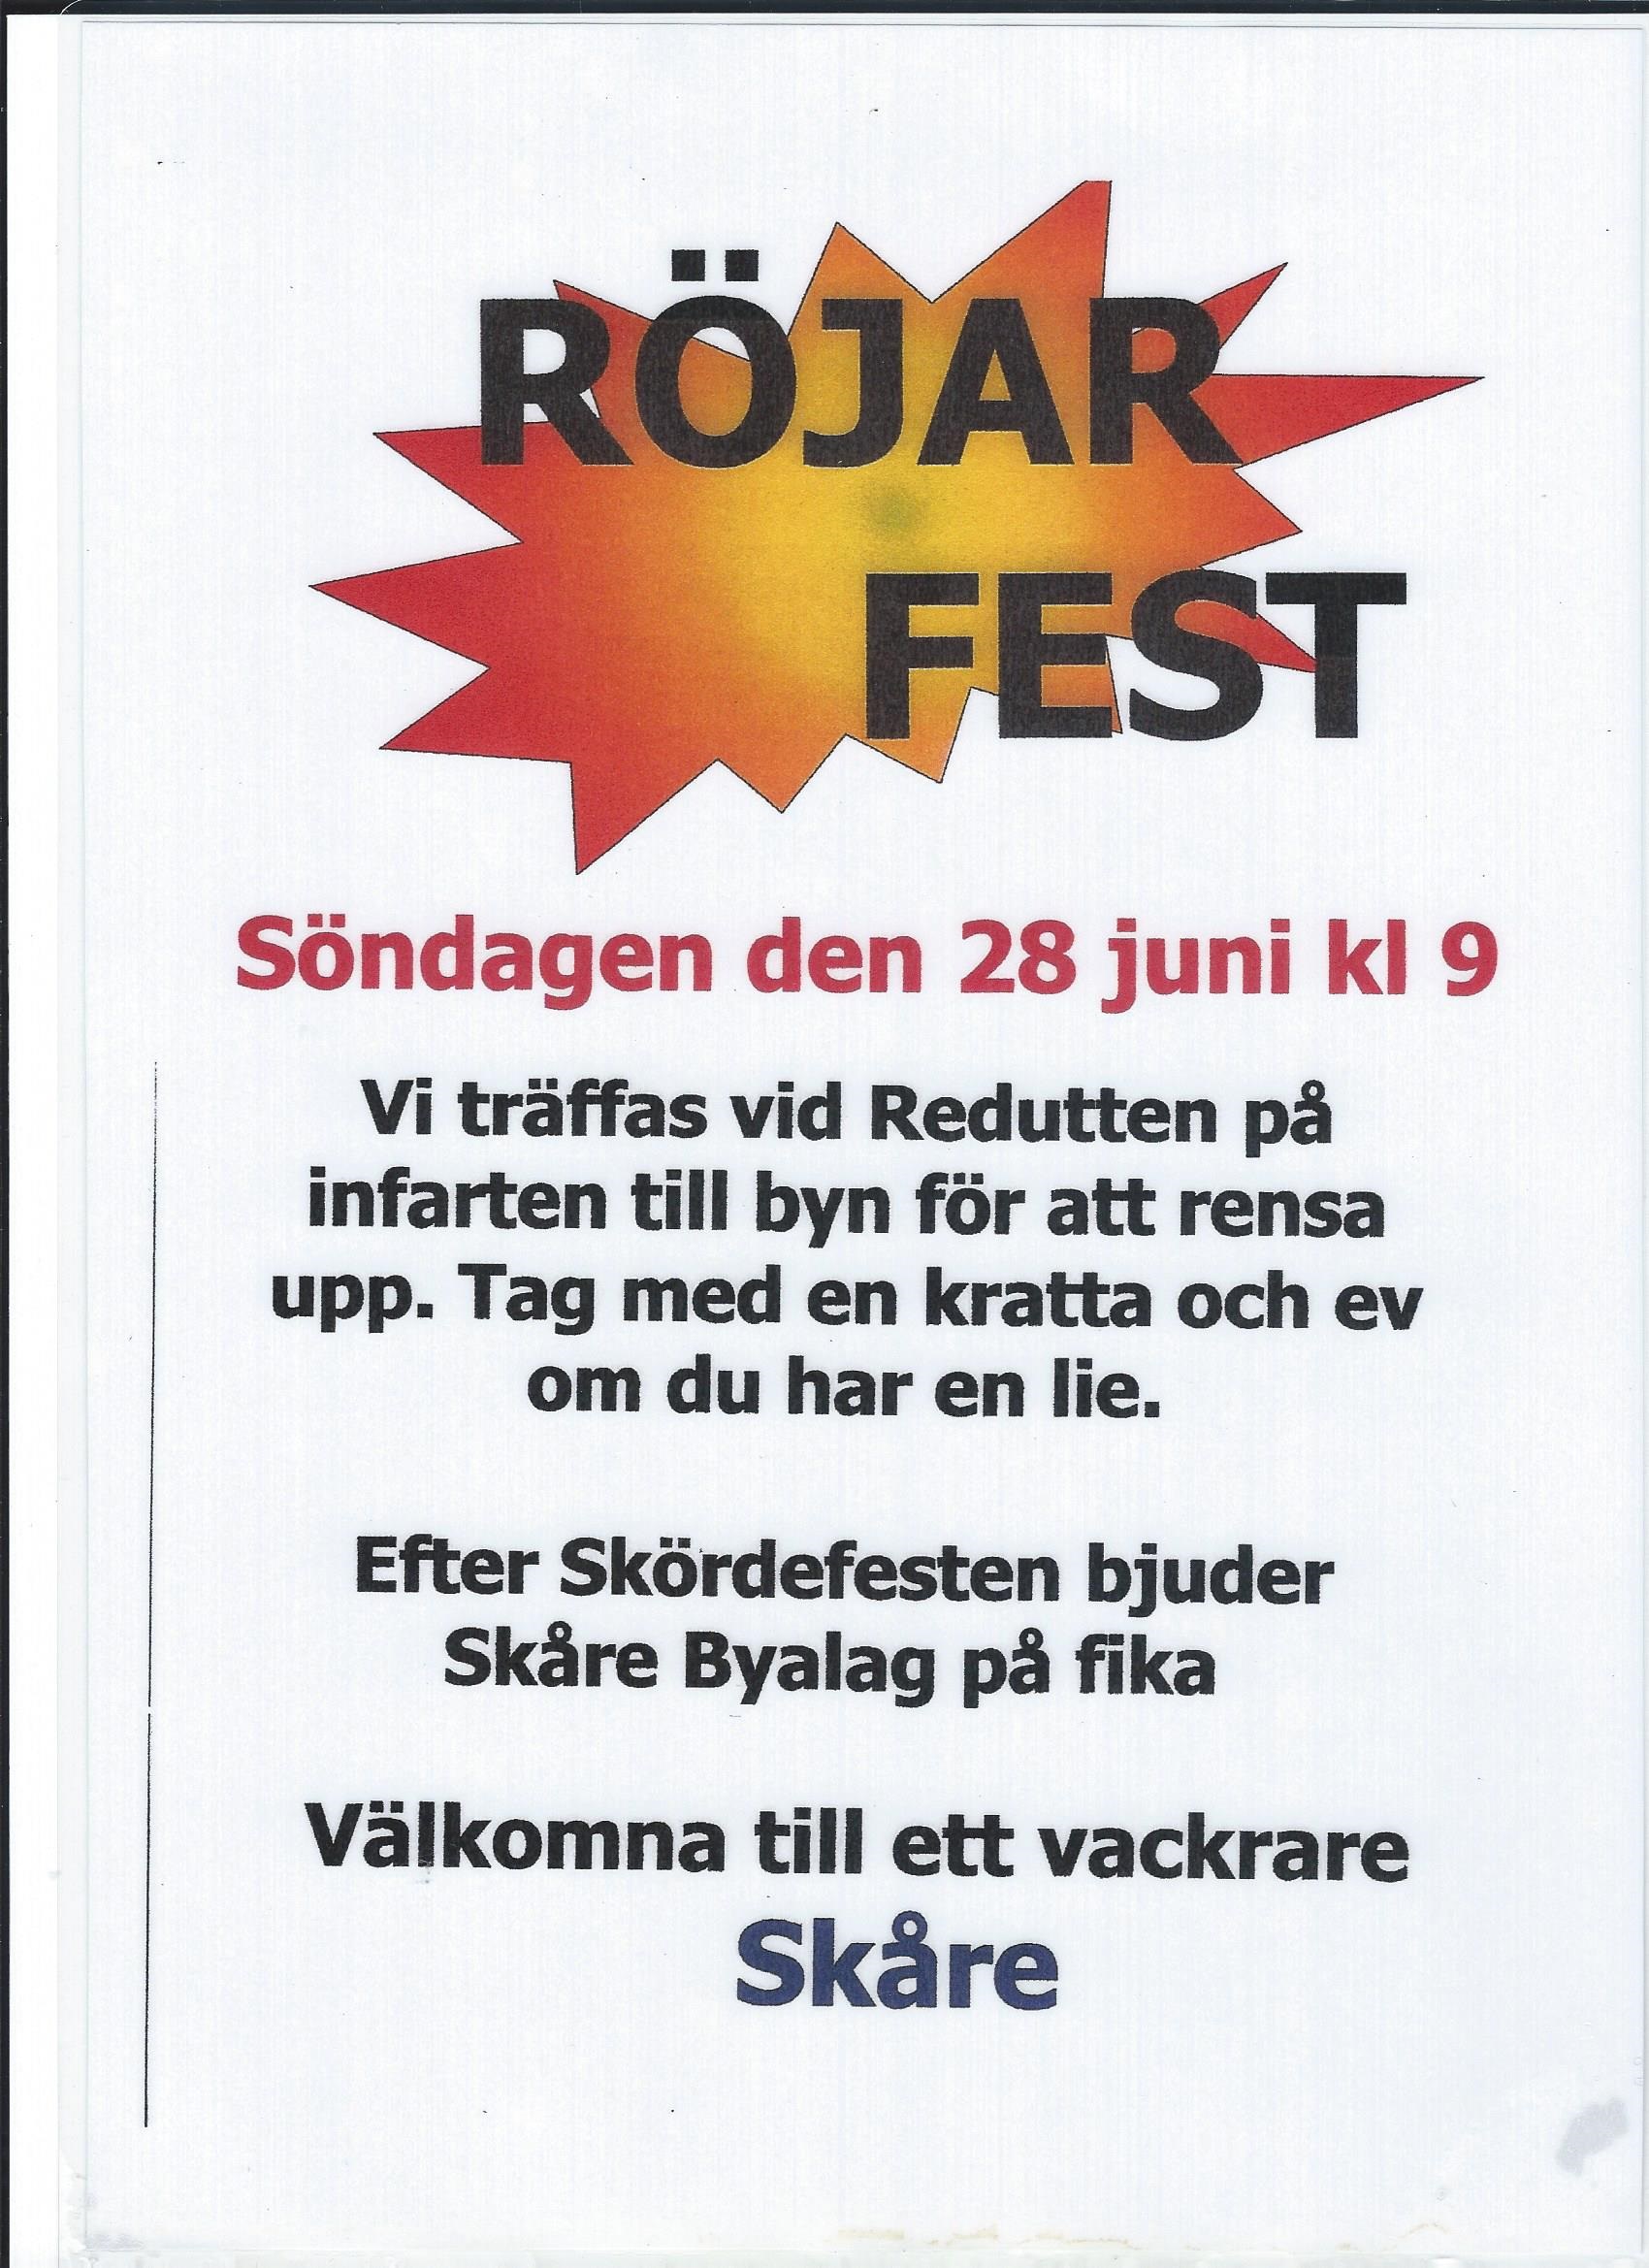 Röjarfest 2015